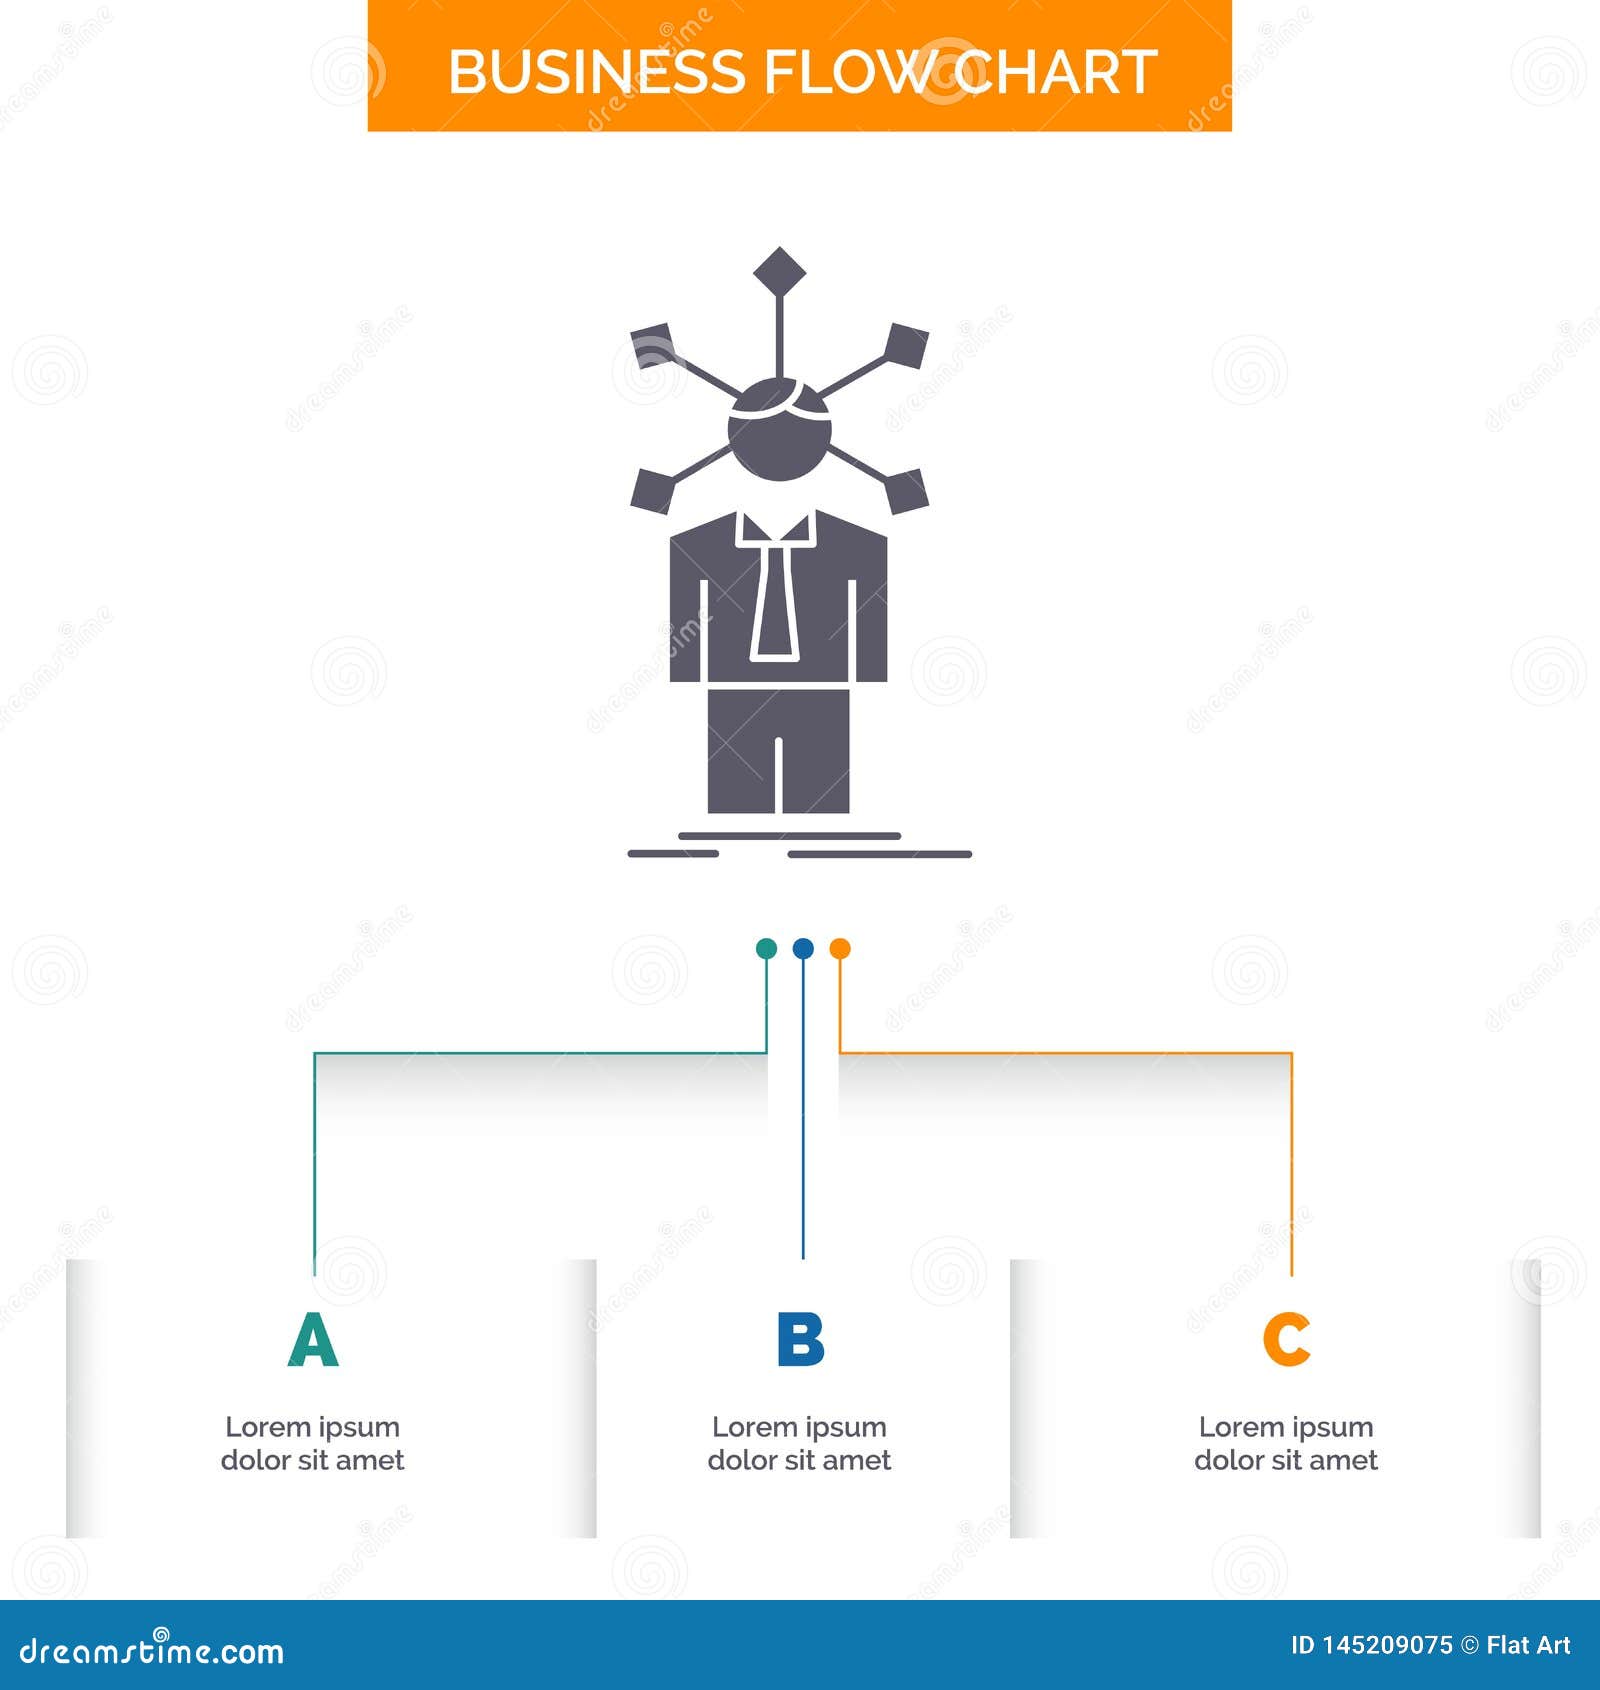 Development Flow Chart